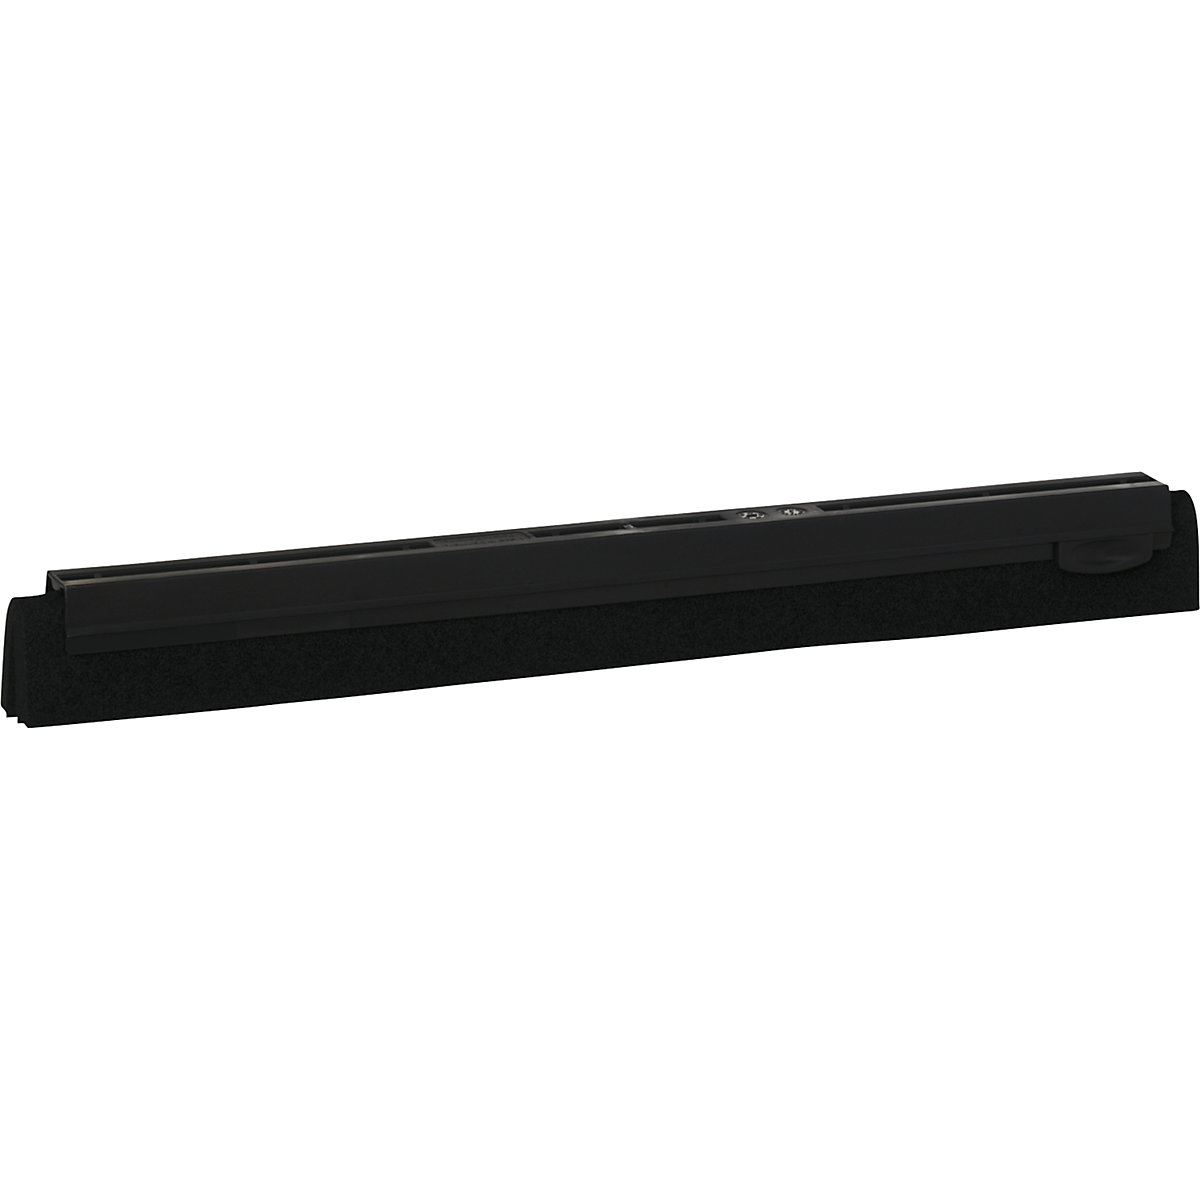 Vikan – Cassetta di ricambio per tira acqua, lunghezza 400 mm, conf. da 20 pz., nero